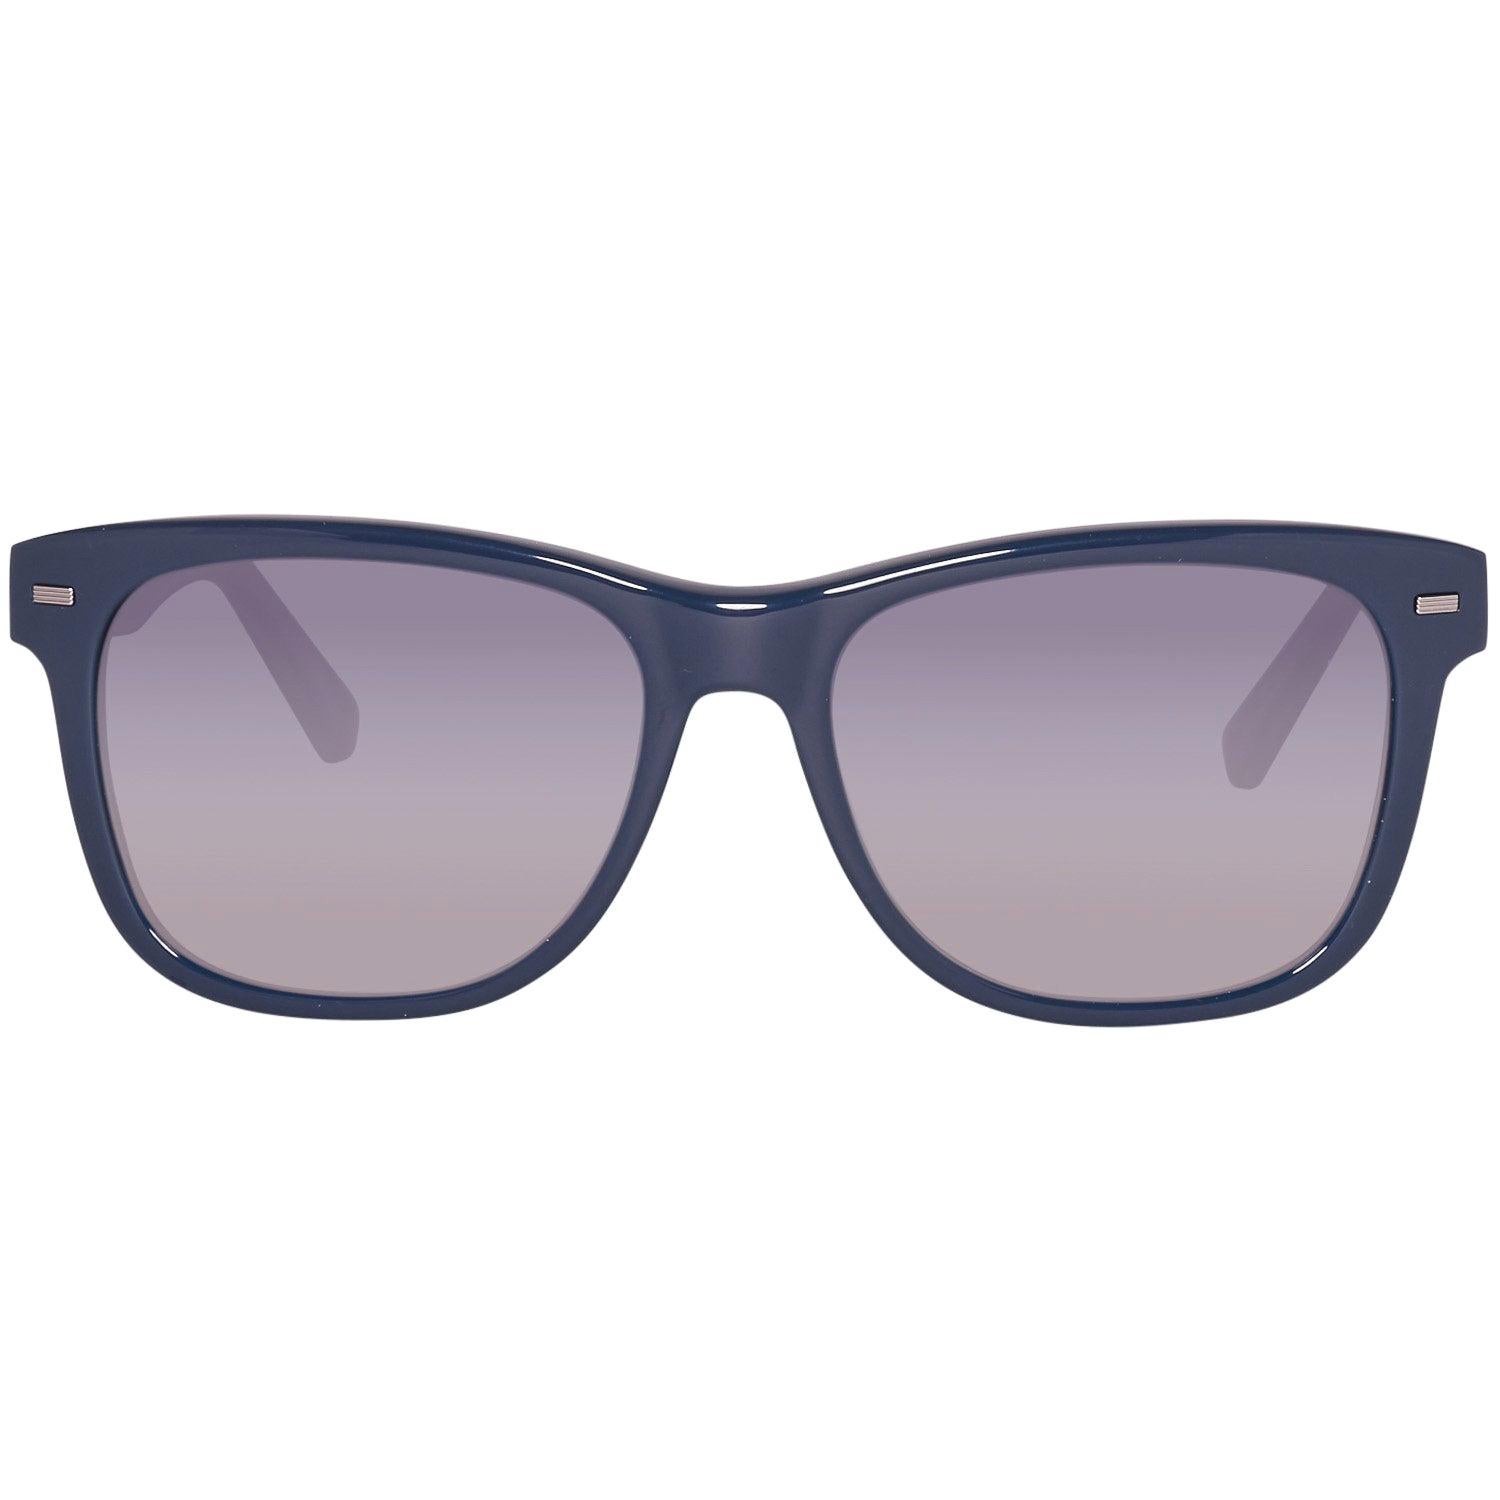 Ermenegildo Zegna Mint Unisex Blue Sunglasses EZ0028 5492B 54-16-138 mm